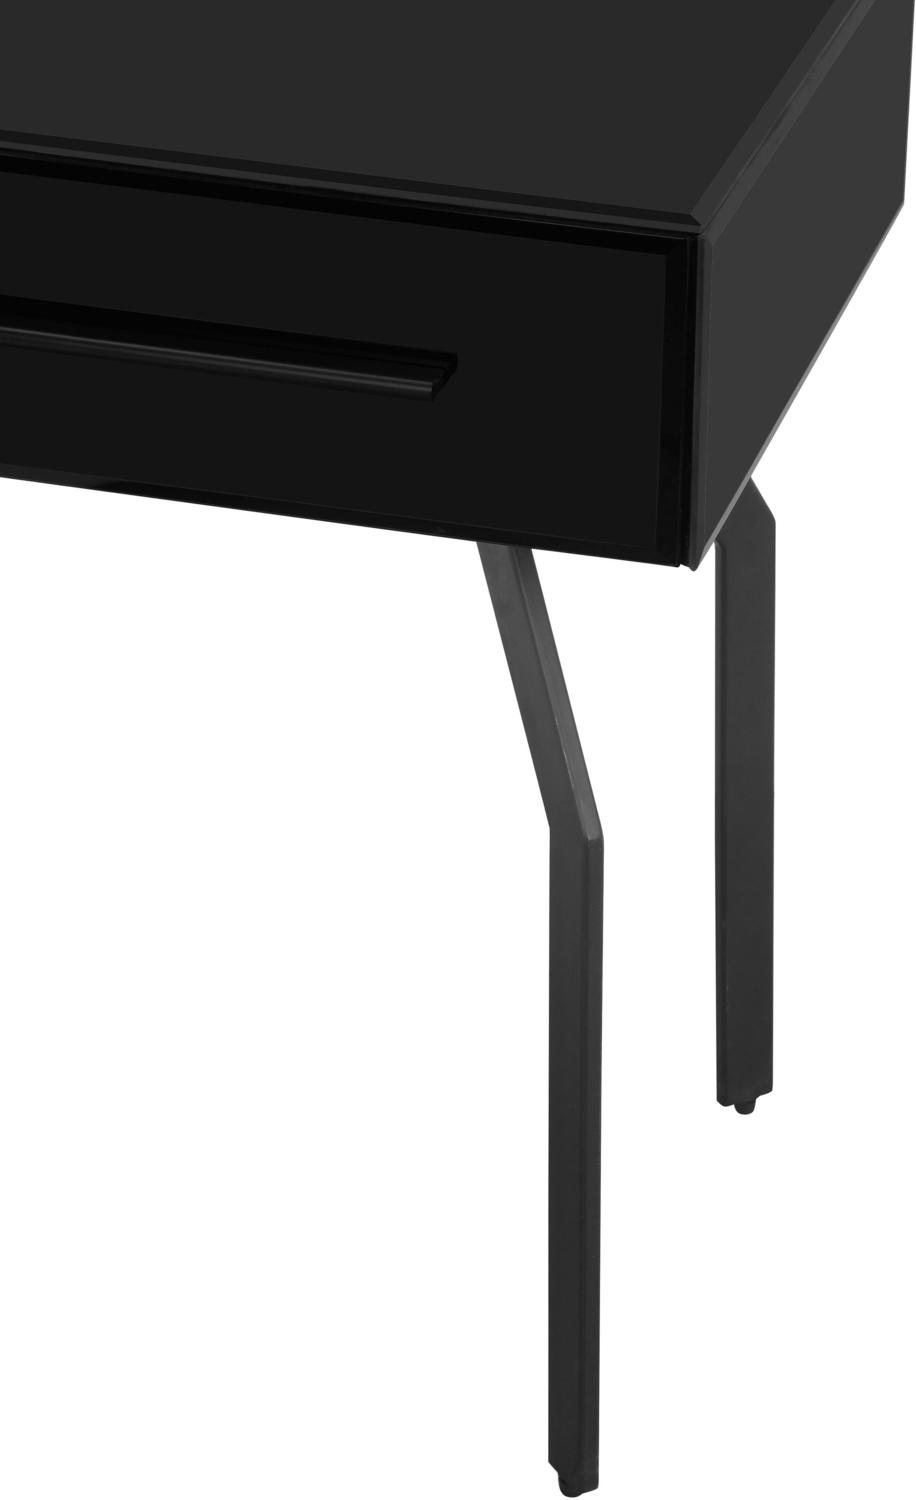 one drawer bedside table Tov Furniture Side Tables Black